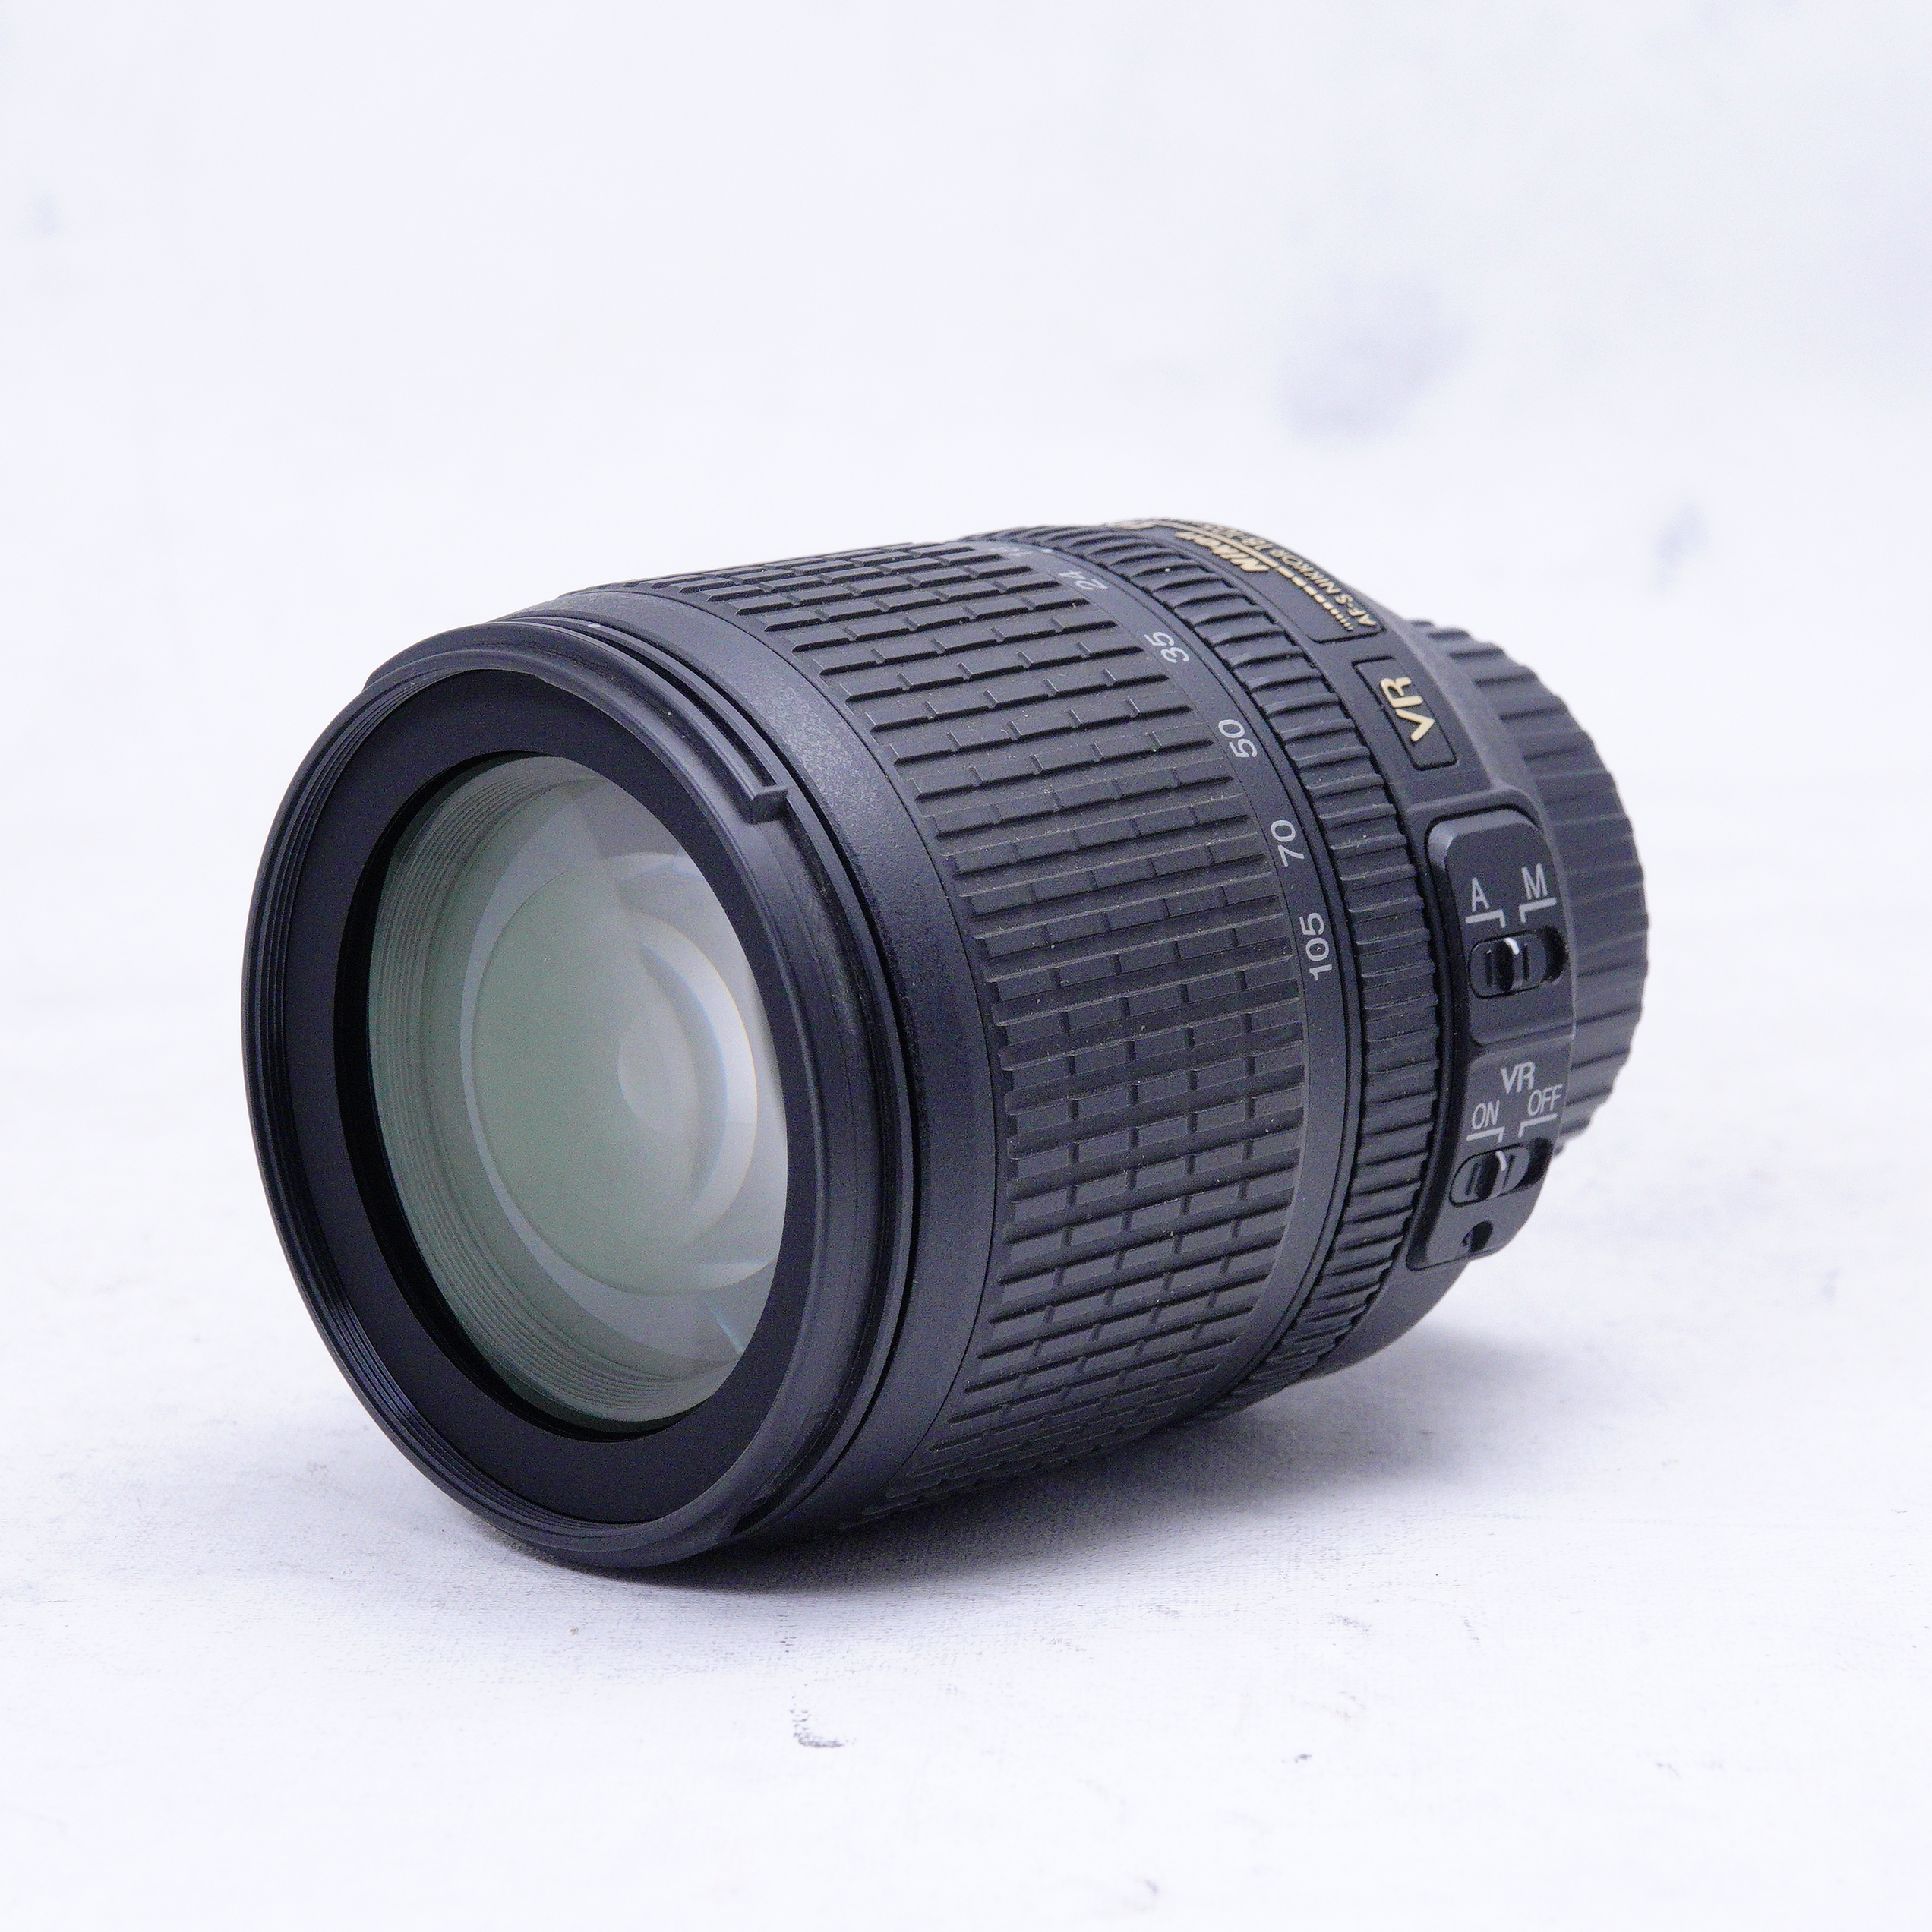 Nikon AF-S DX NIKKOR 18-105mm f3.5-5.6G ED VR- Usado